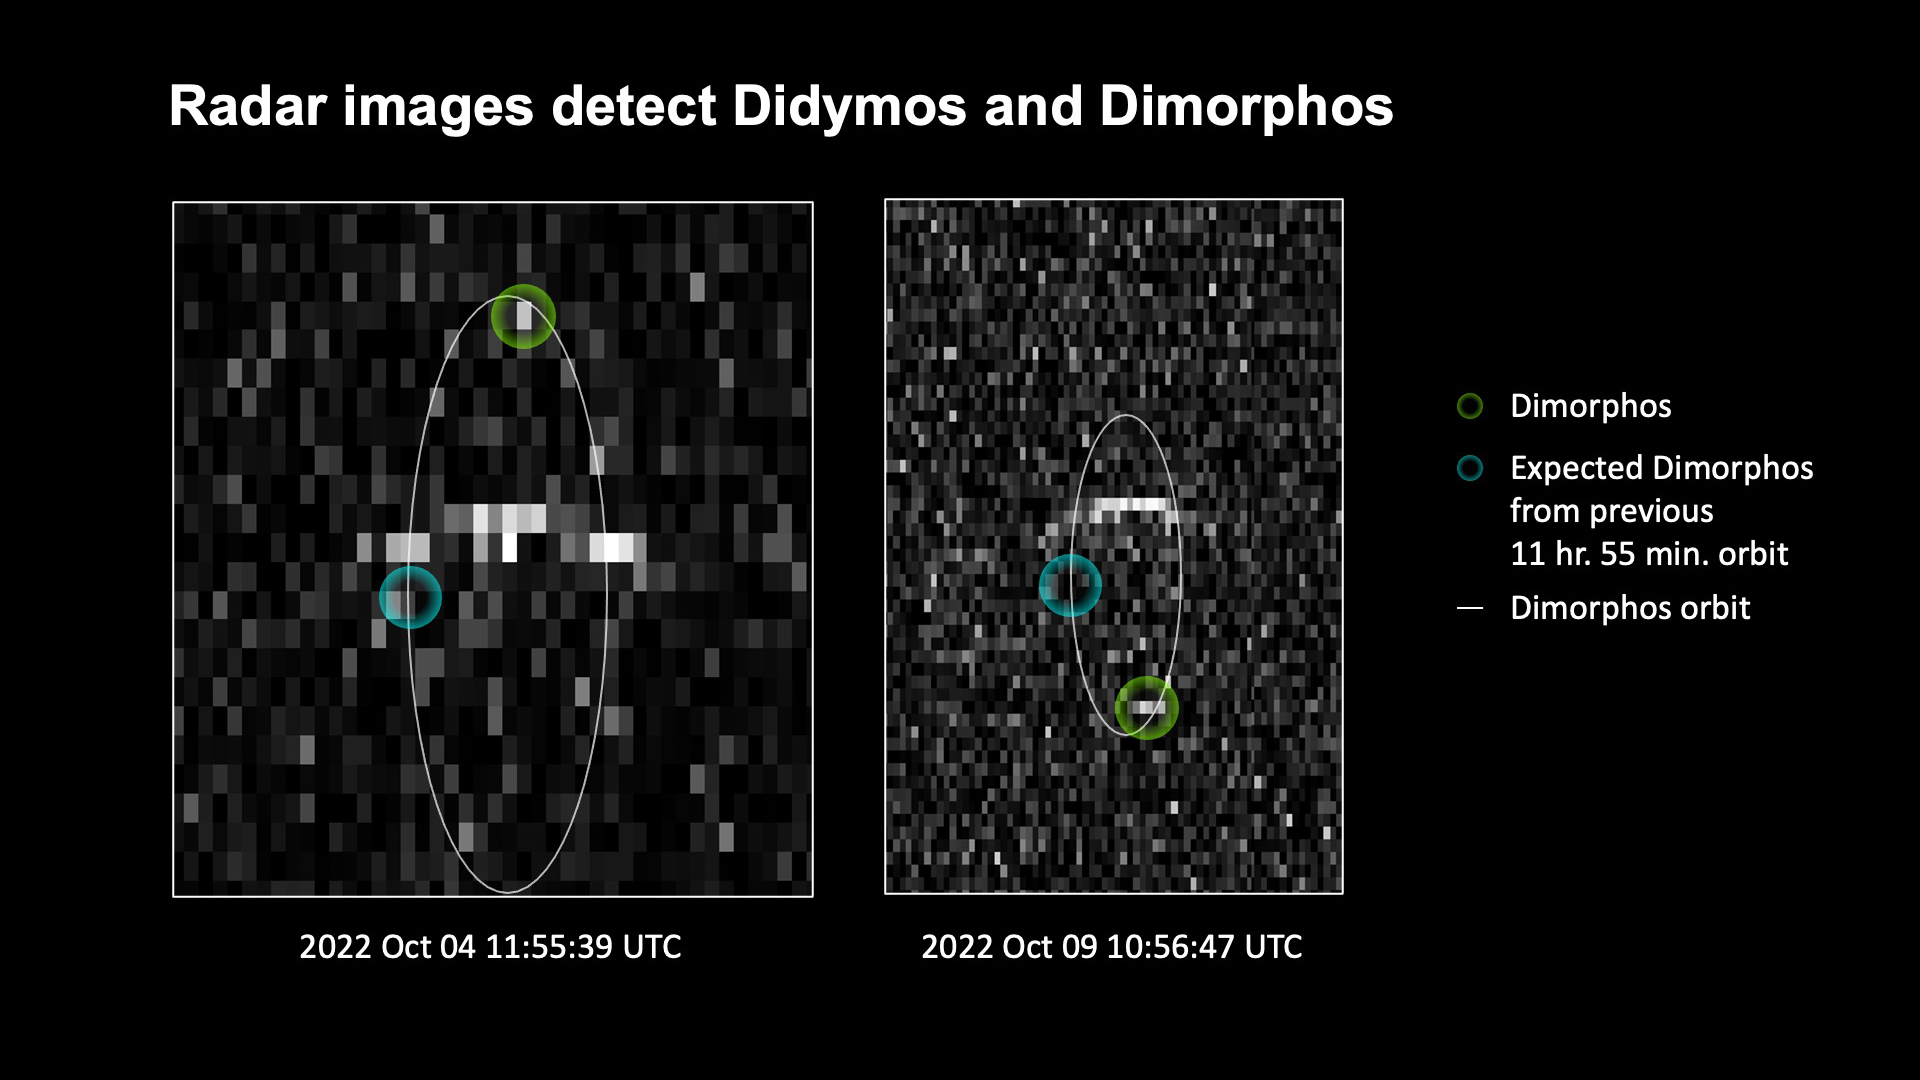 Пиксельное черно-белое изображение помечено 2022 Oct 04 11:55:39 UTC и показывает тонкую круглую линию, представляющую Диморфоса.